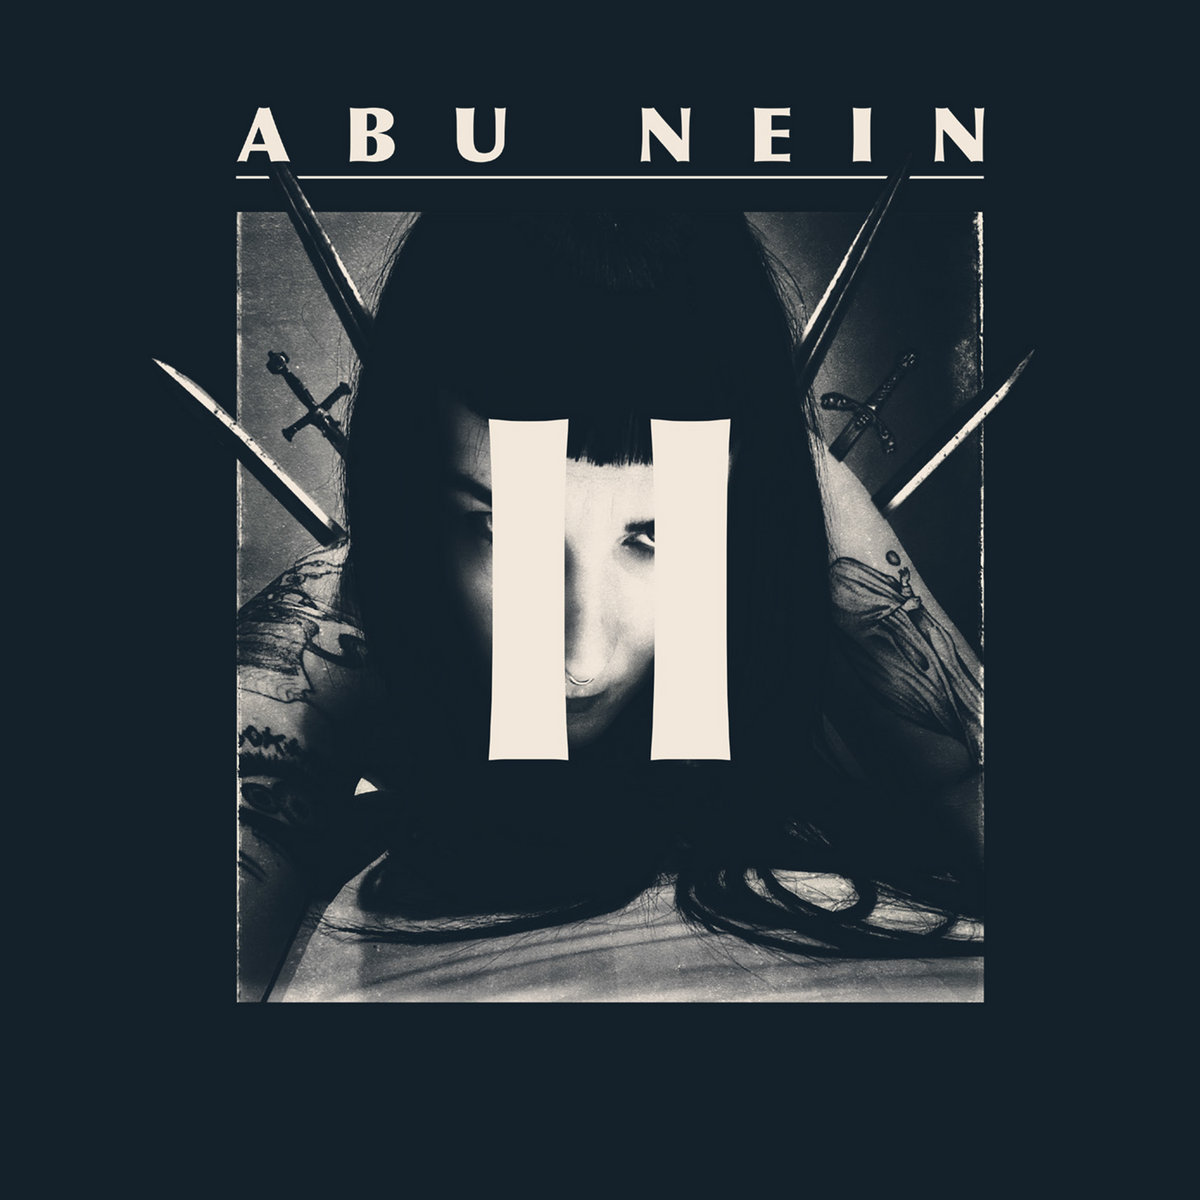 Abu Nein cover